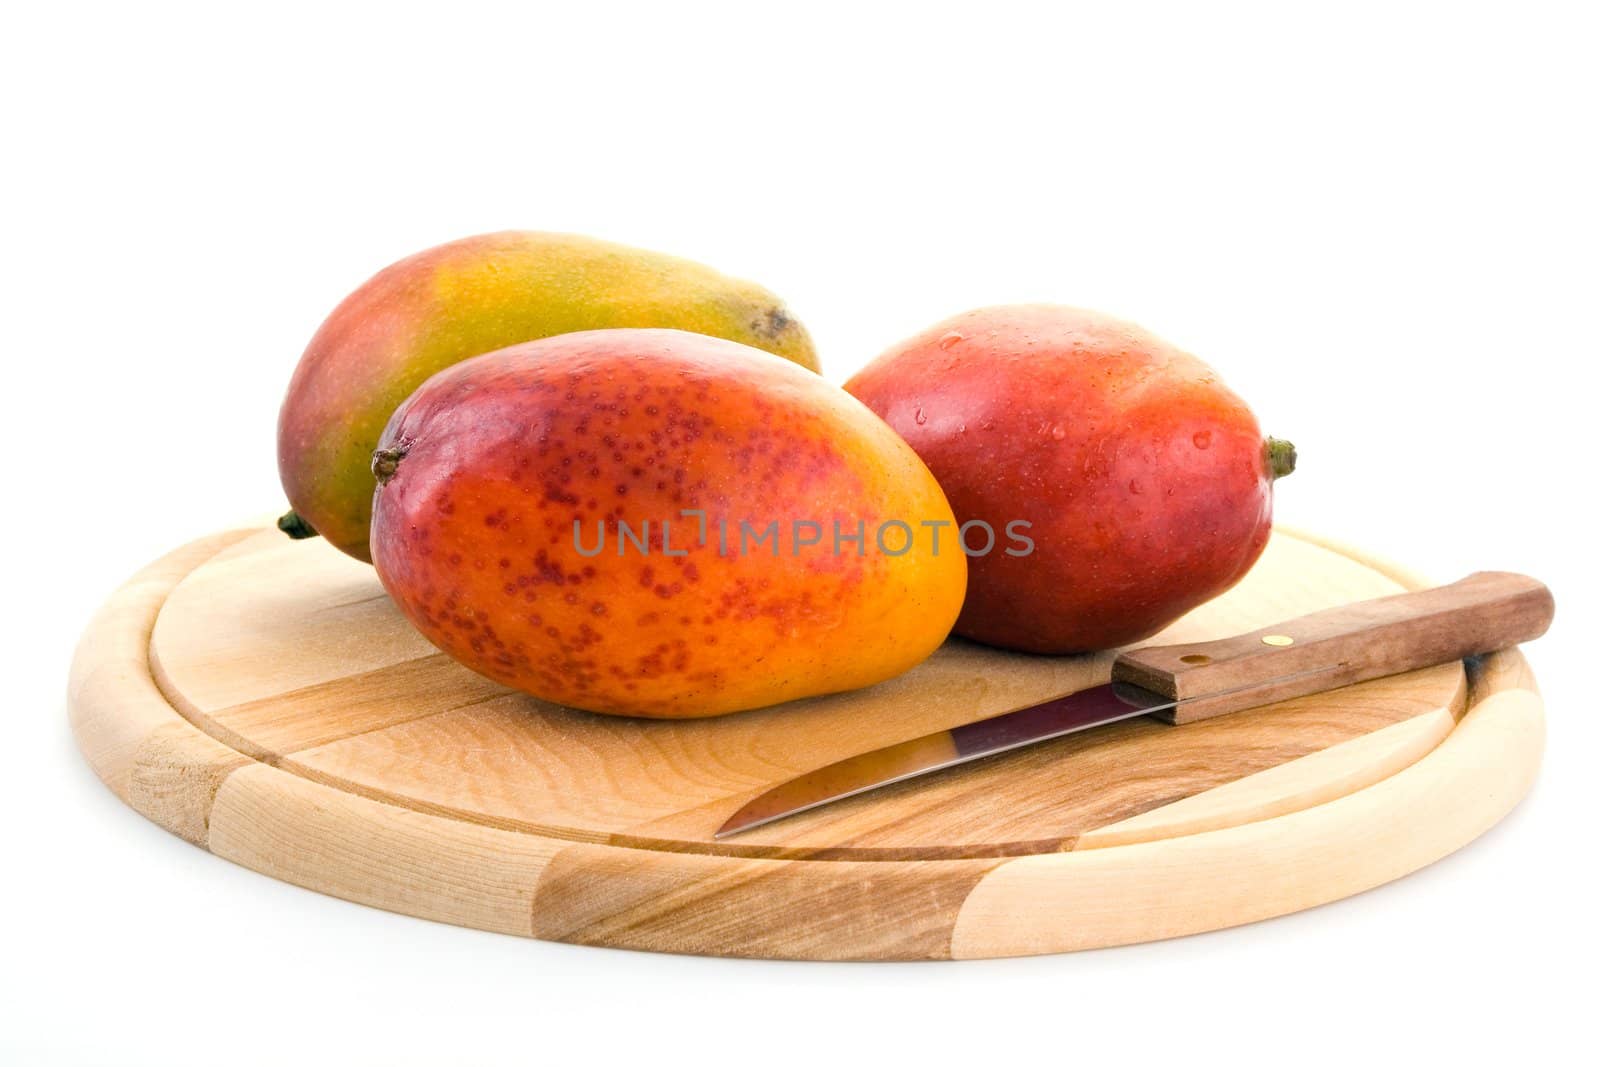 Juicy mangoes by Vladimir